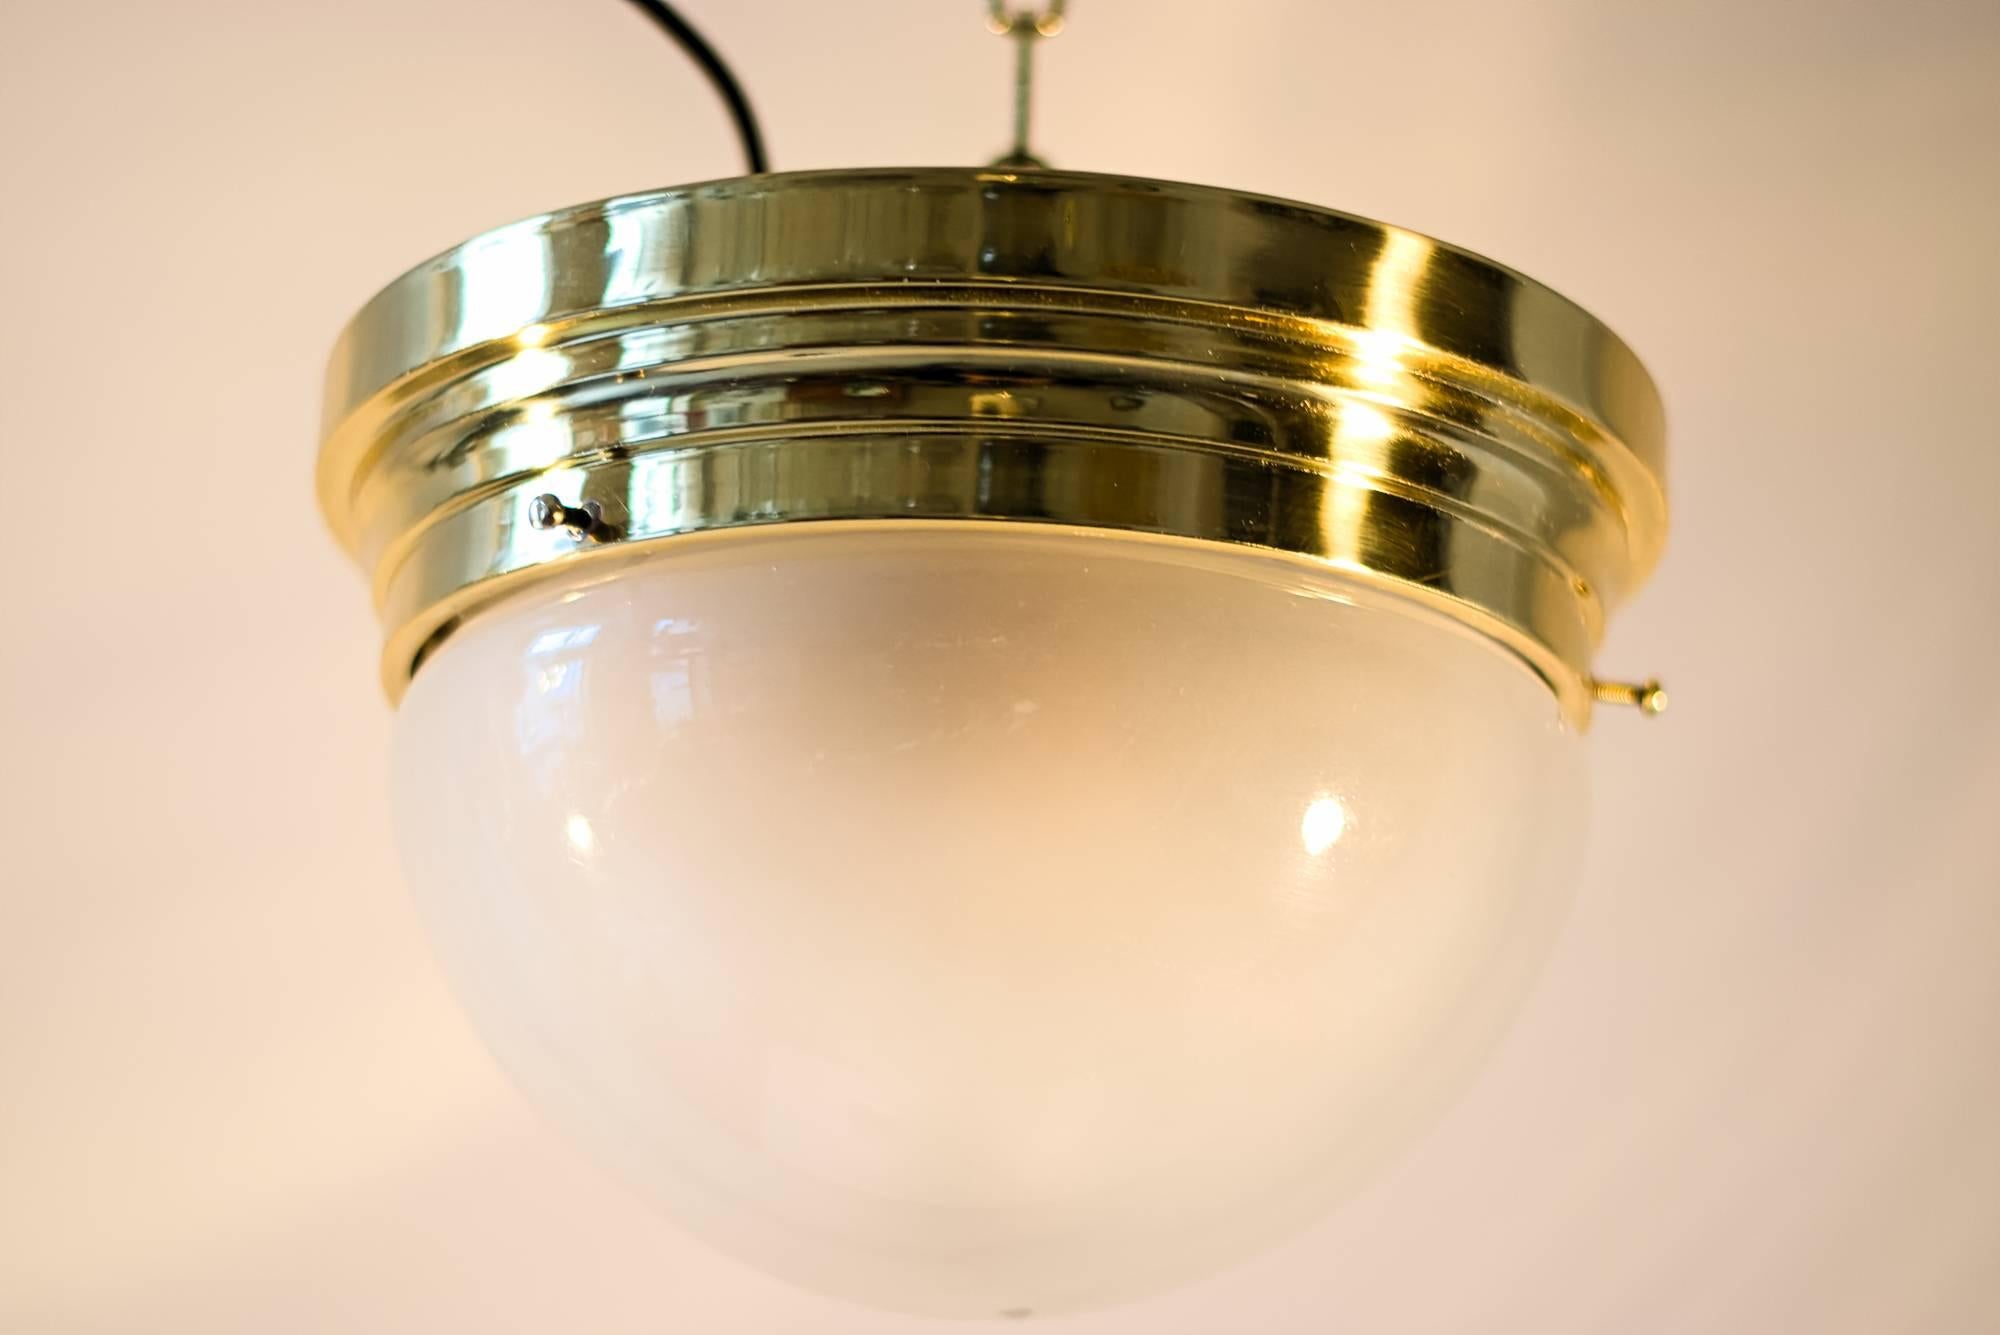 Art Deco Deckenlampe mit originalem Glasschirm 
poliert und einbrennlackiert.